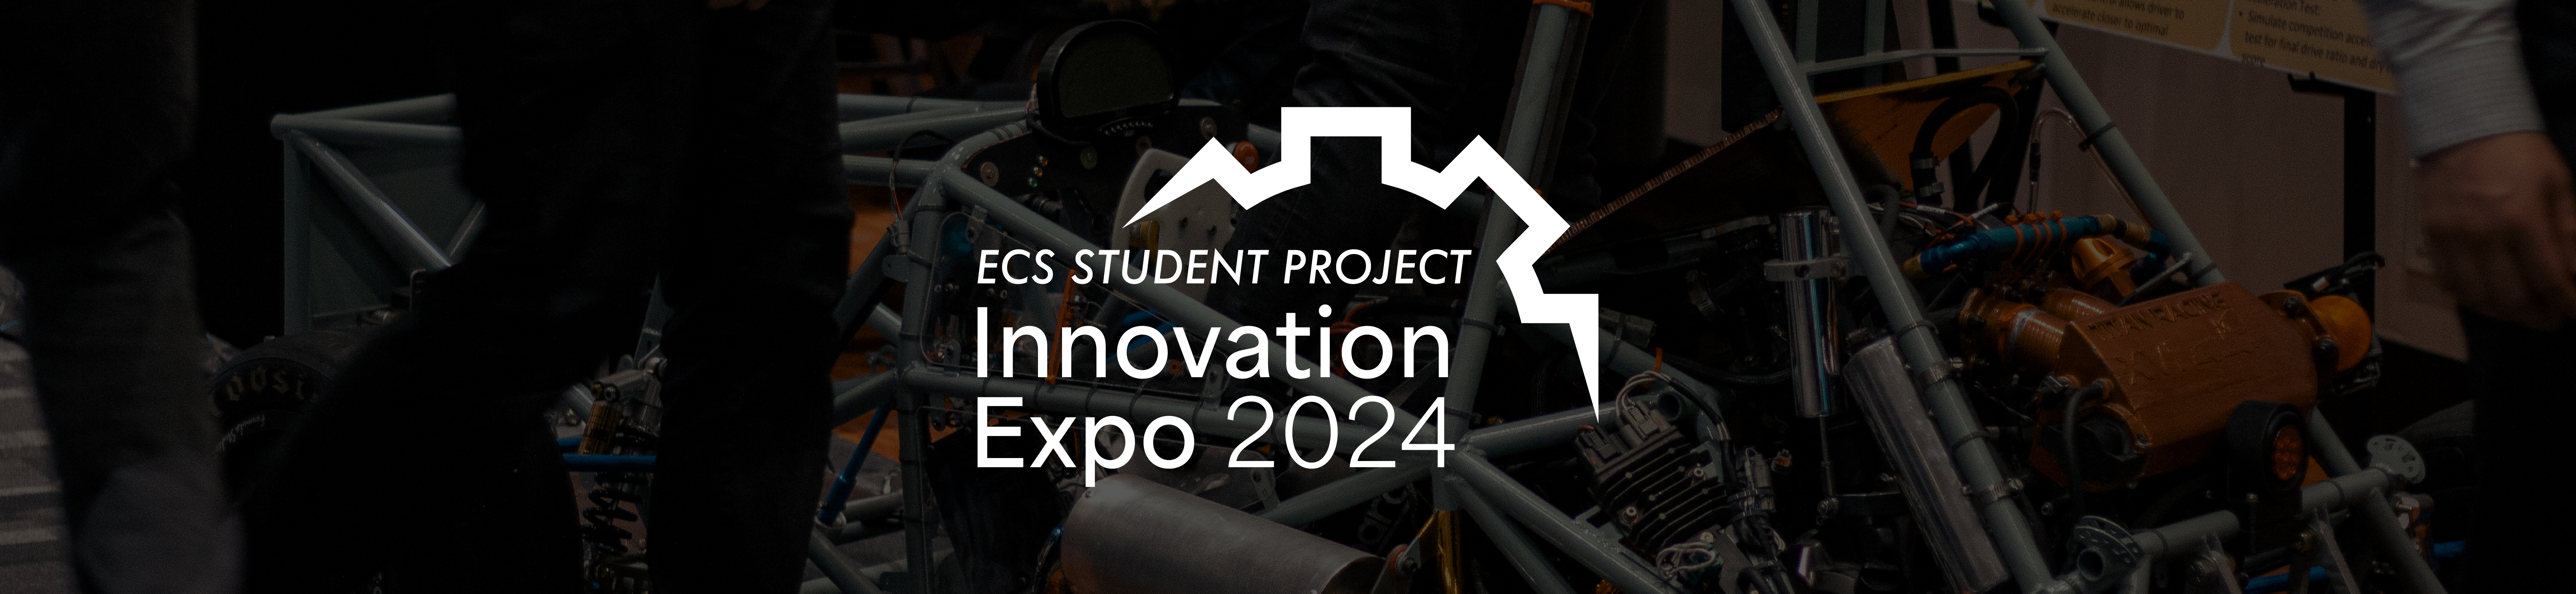 innovation expo 2024